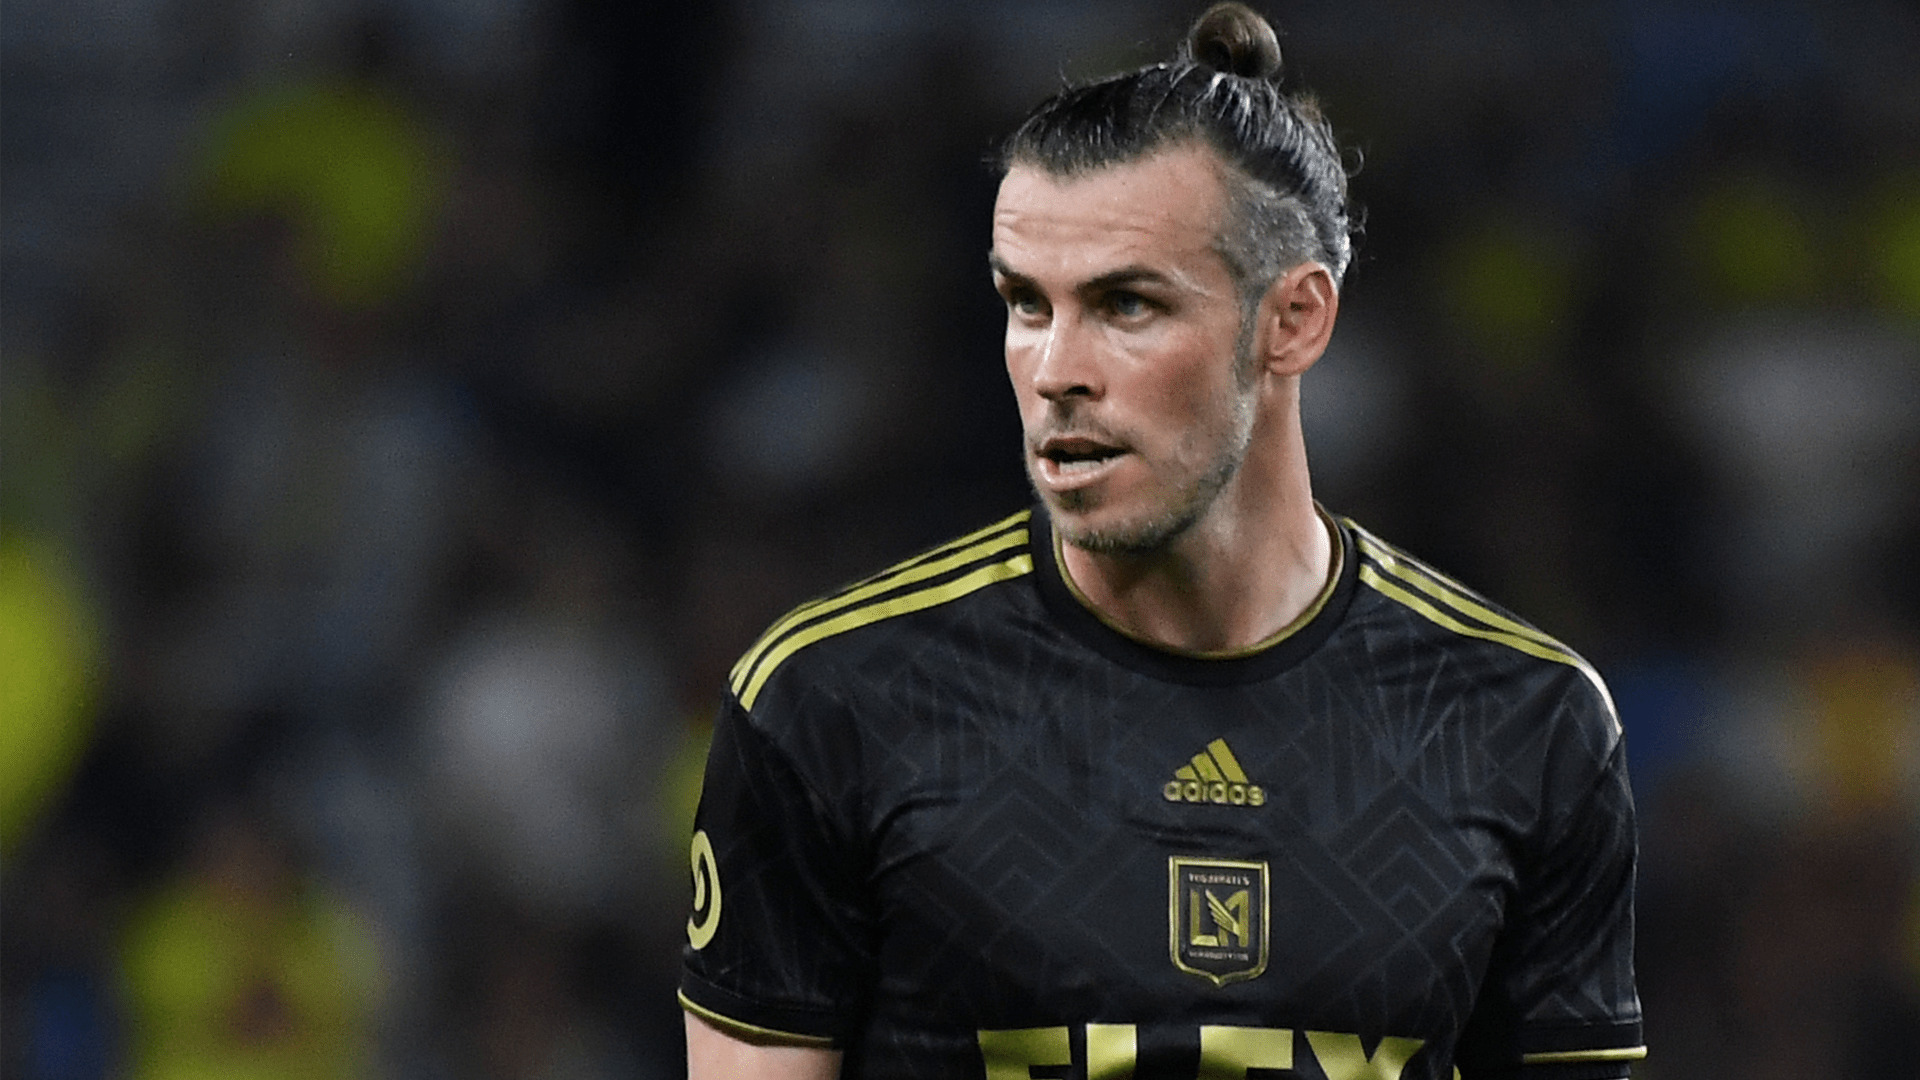 Gareth Bale rencontre une première difficulté en MLS